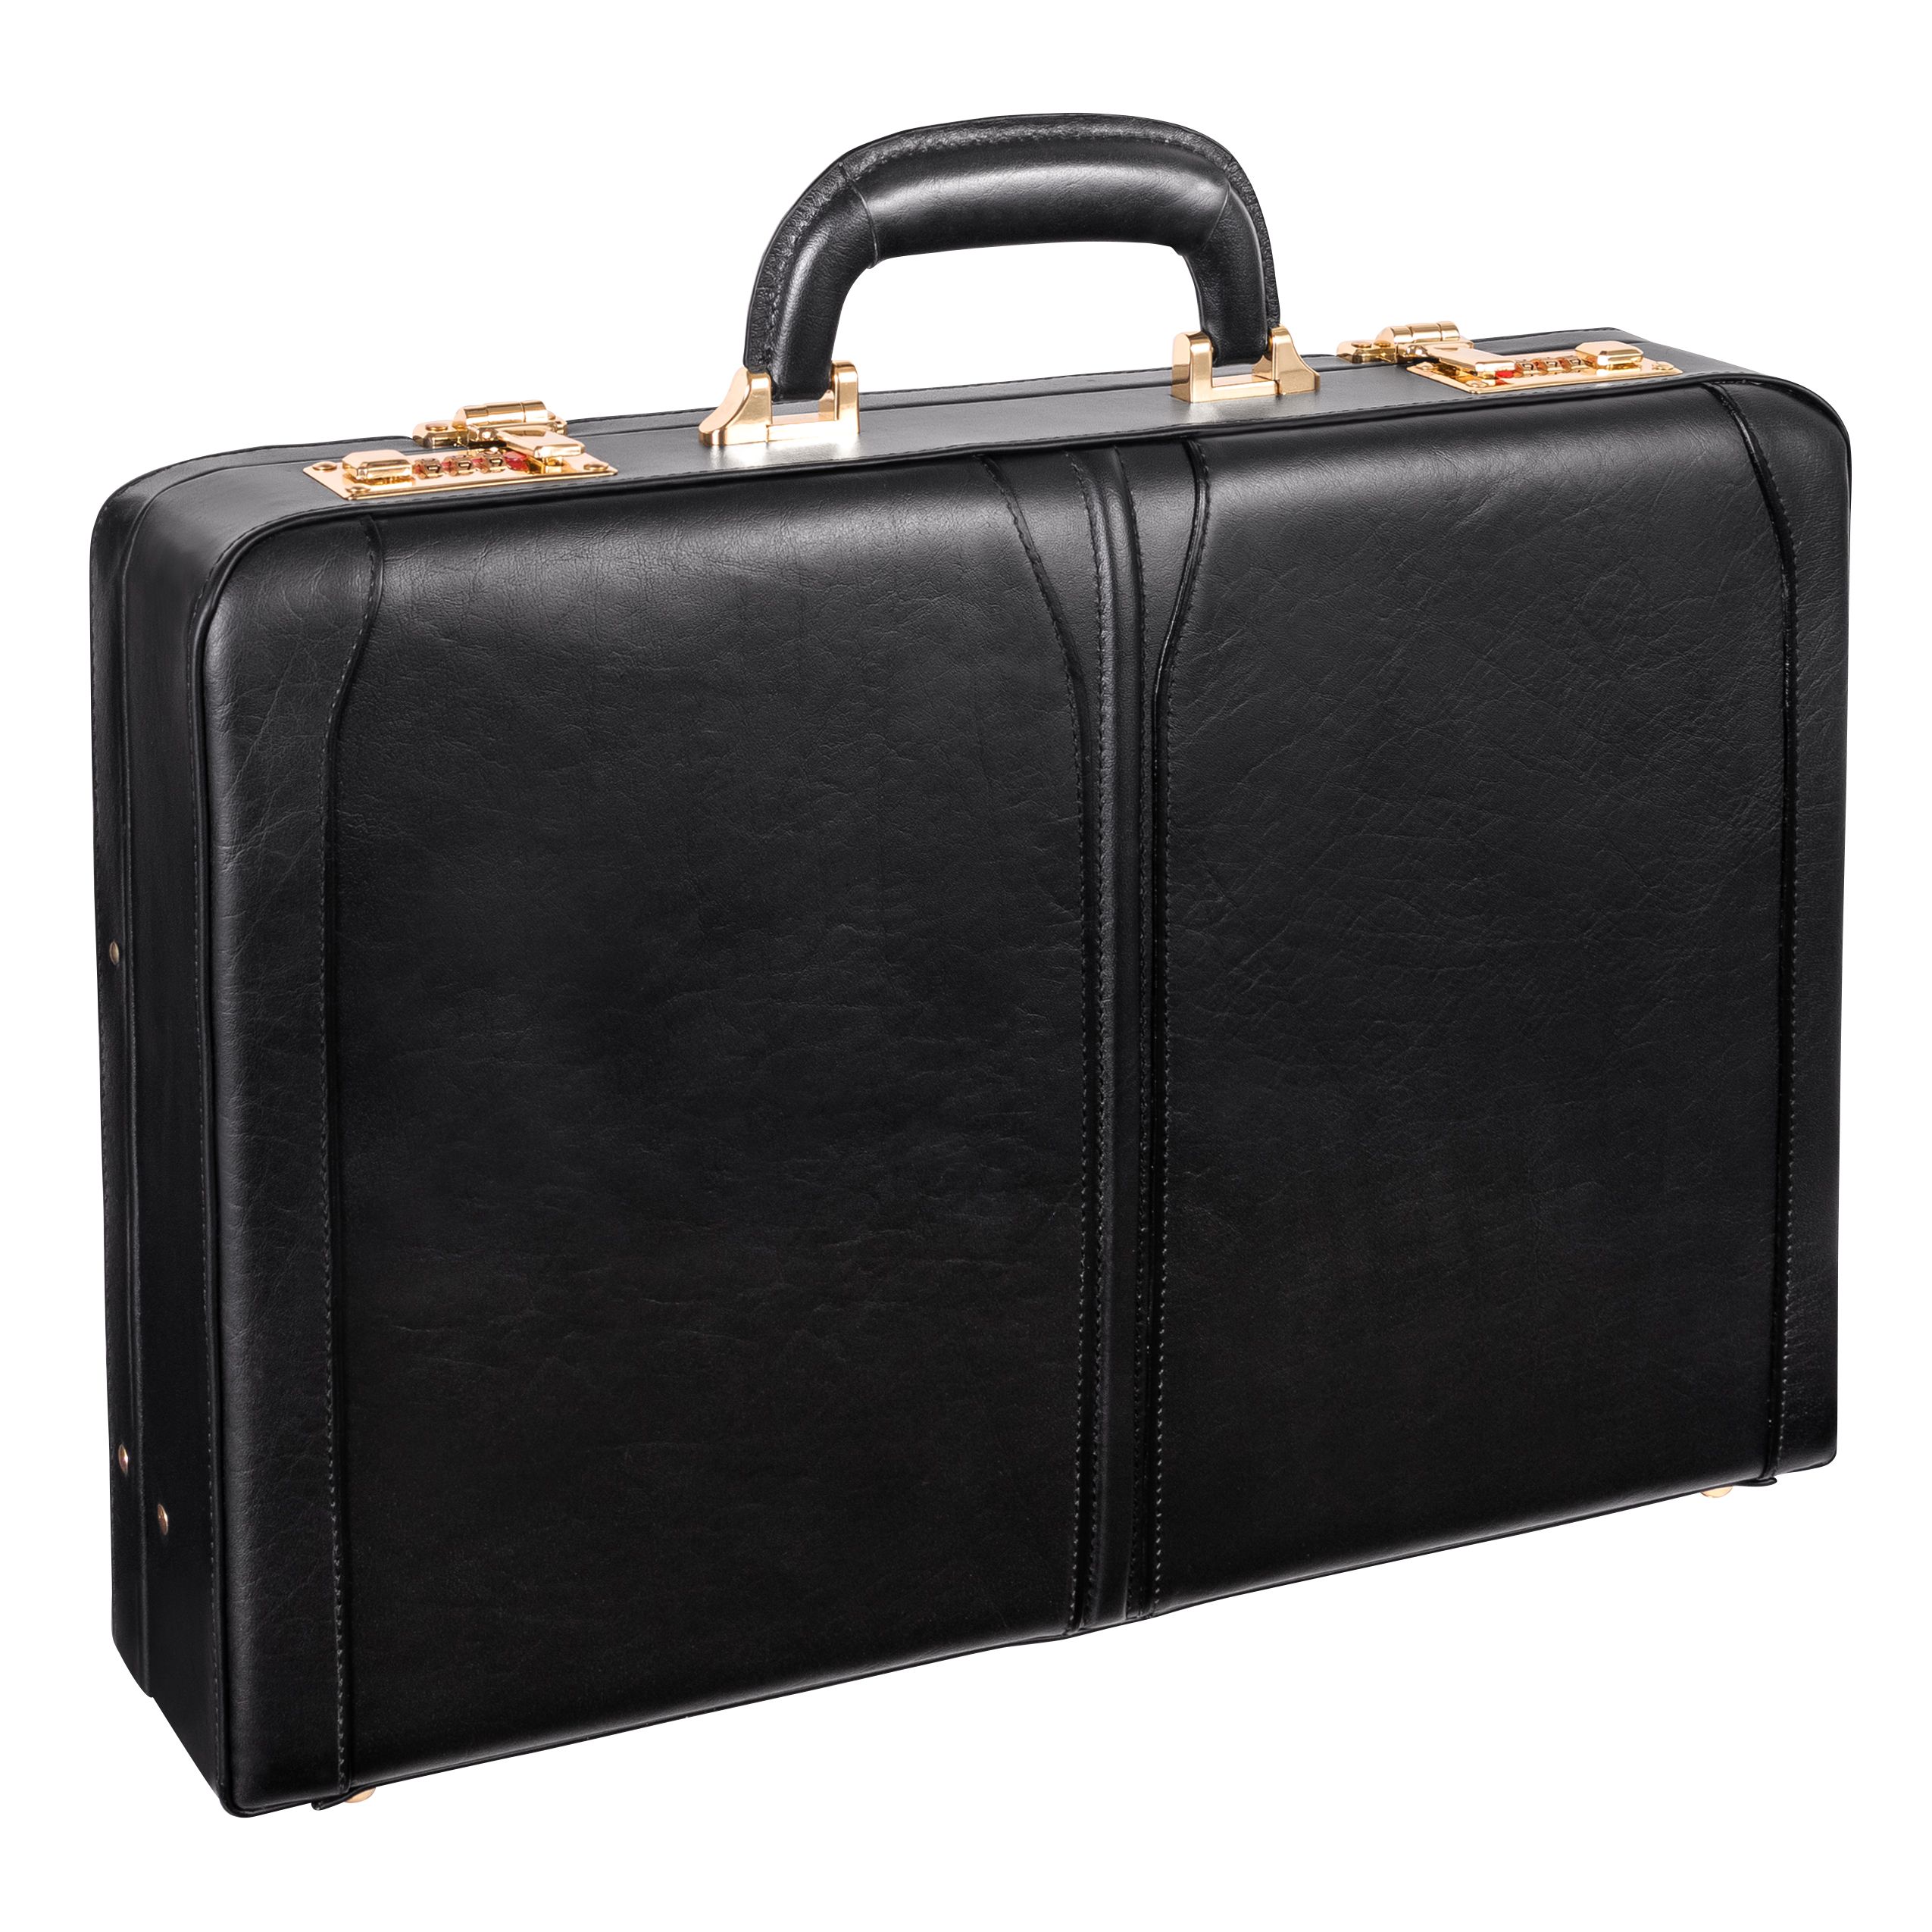 Mcklein 80455 Lawson 80455- Black Leather Attache Case